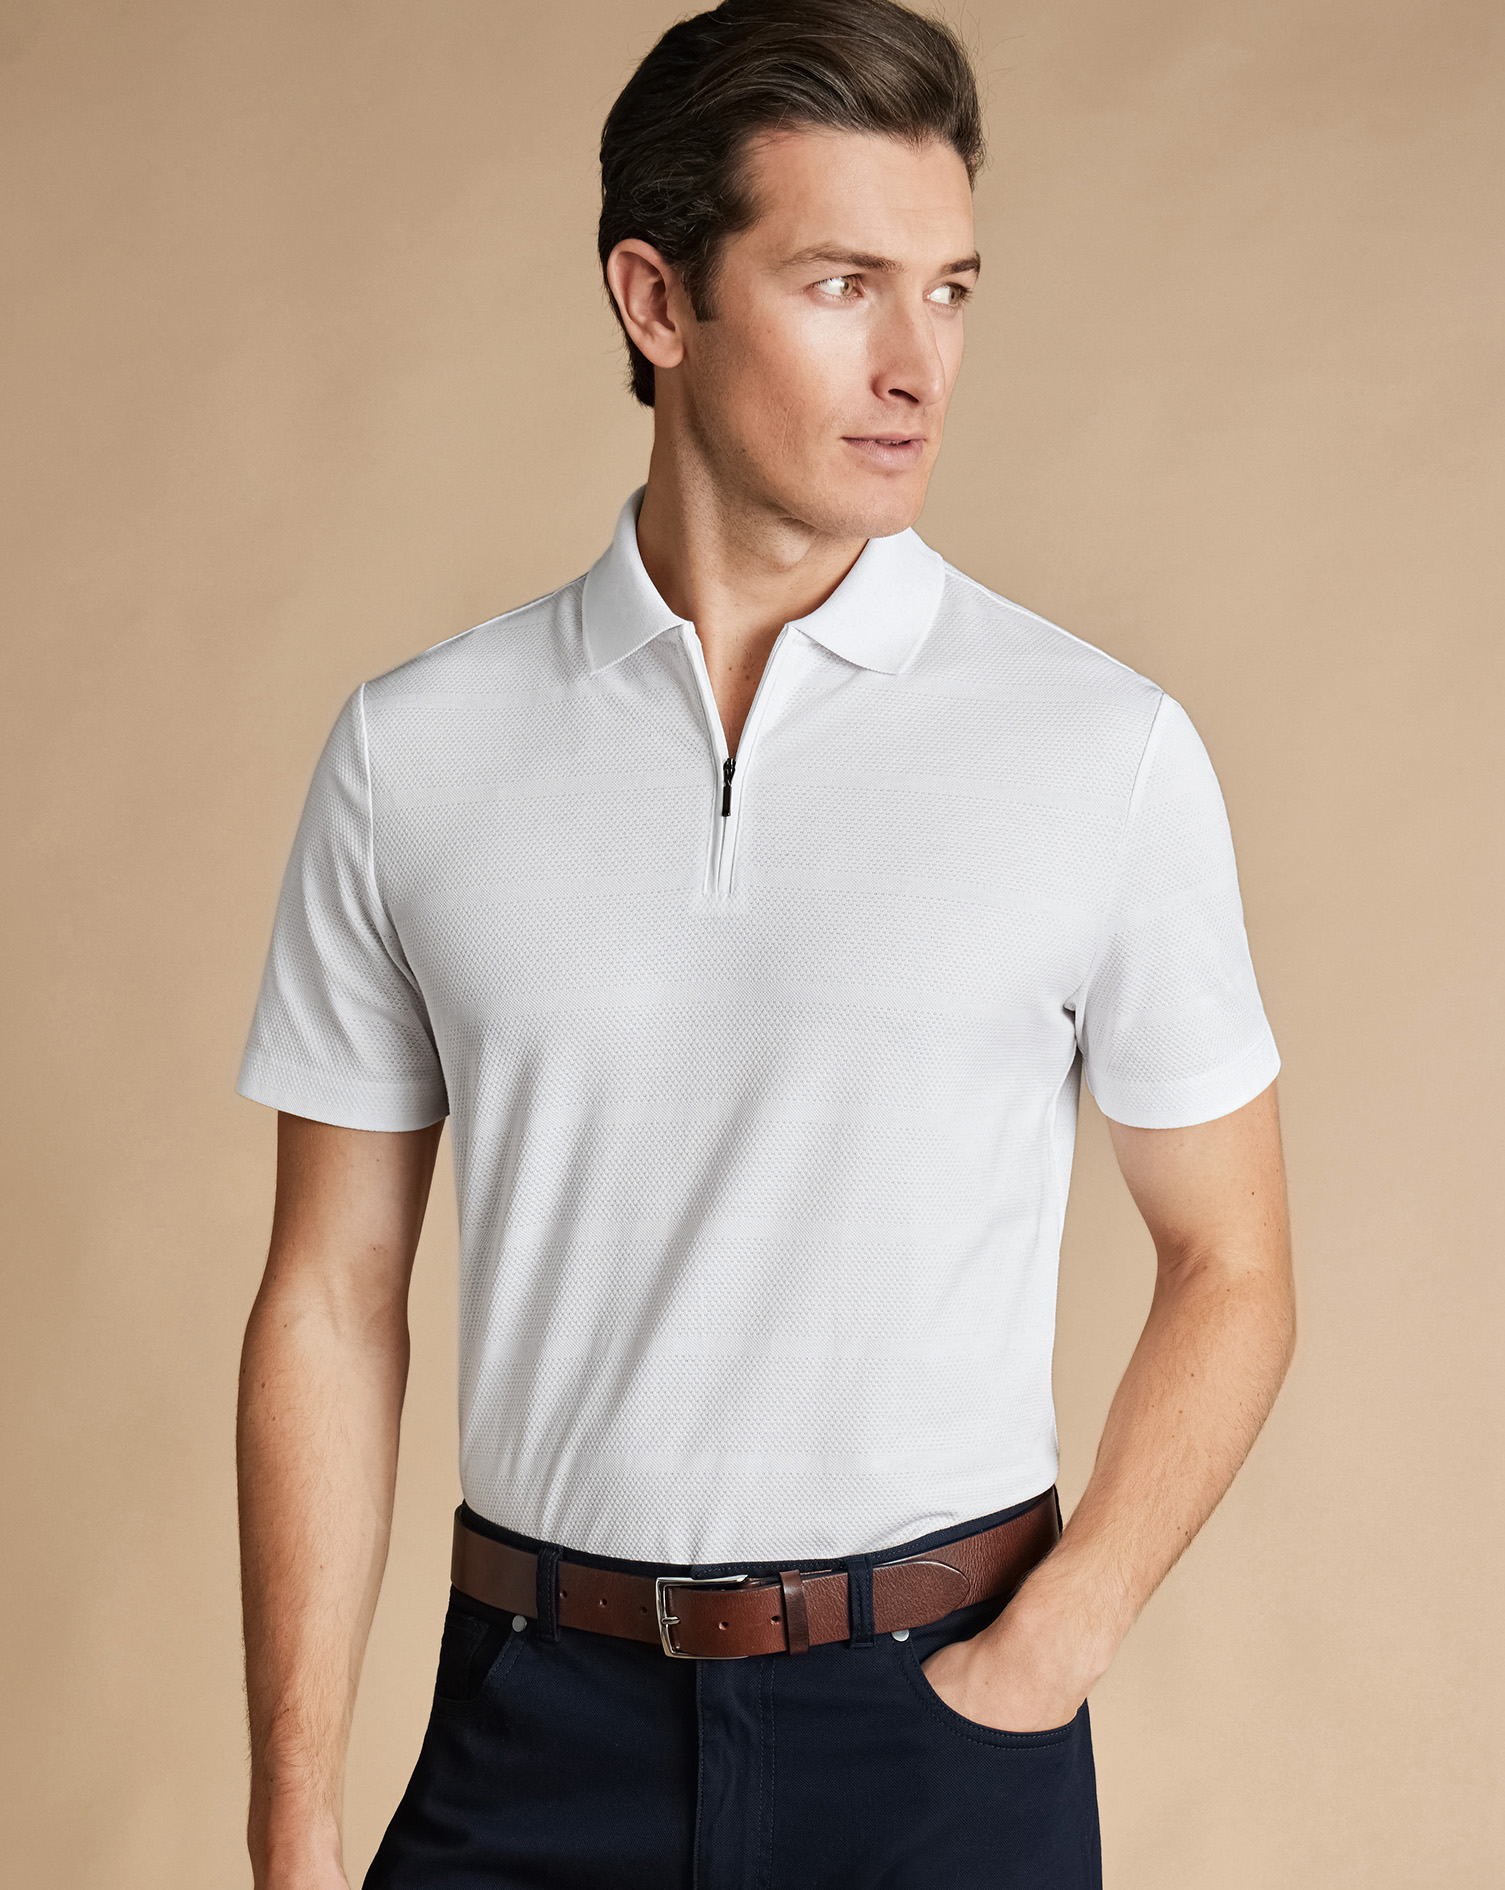 Men's Charles Tyrwhitt Popcorn Textured Tyrwhitt Cool Zip-Neck Stripe Polo Shirt - White Size Medium